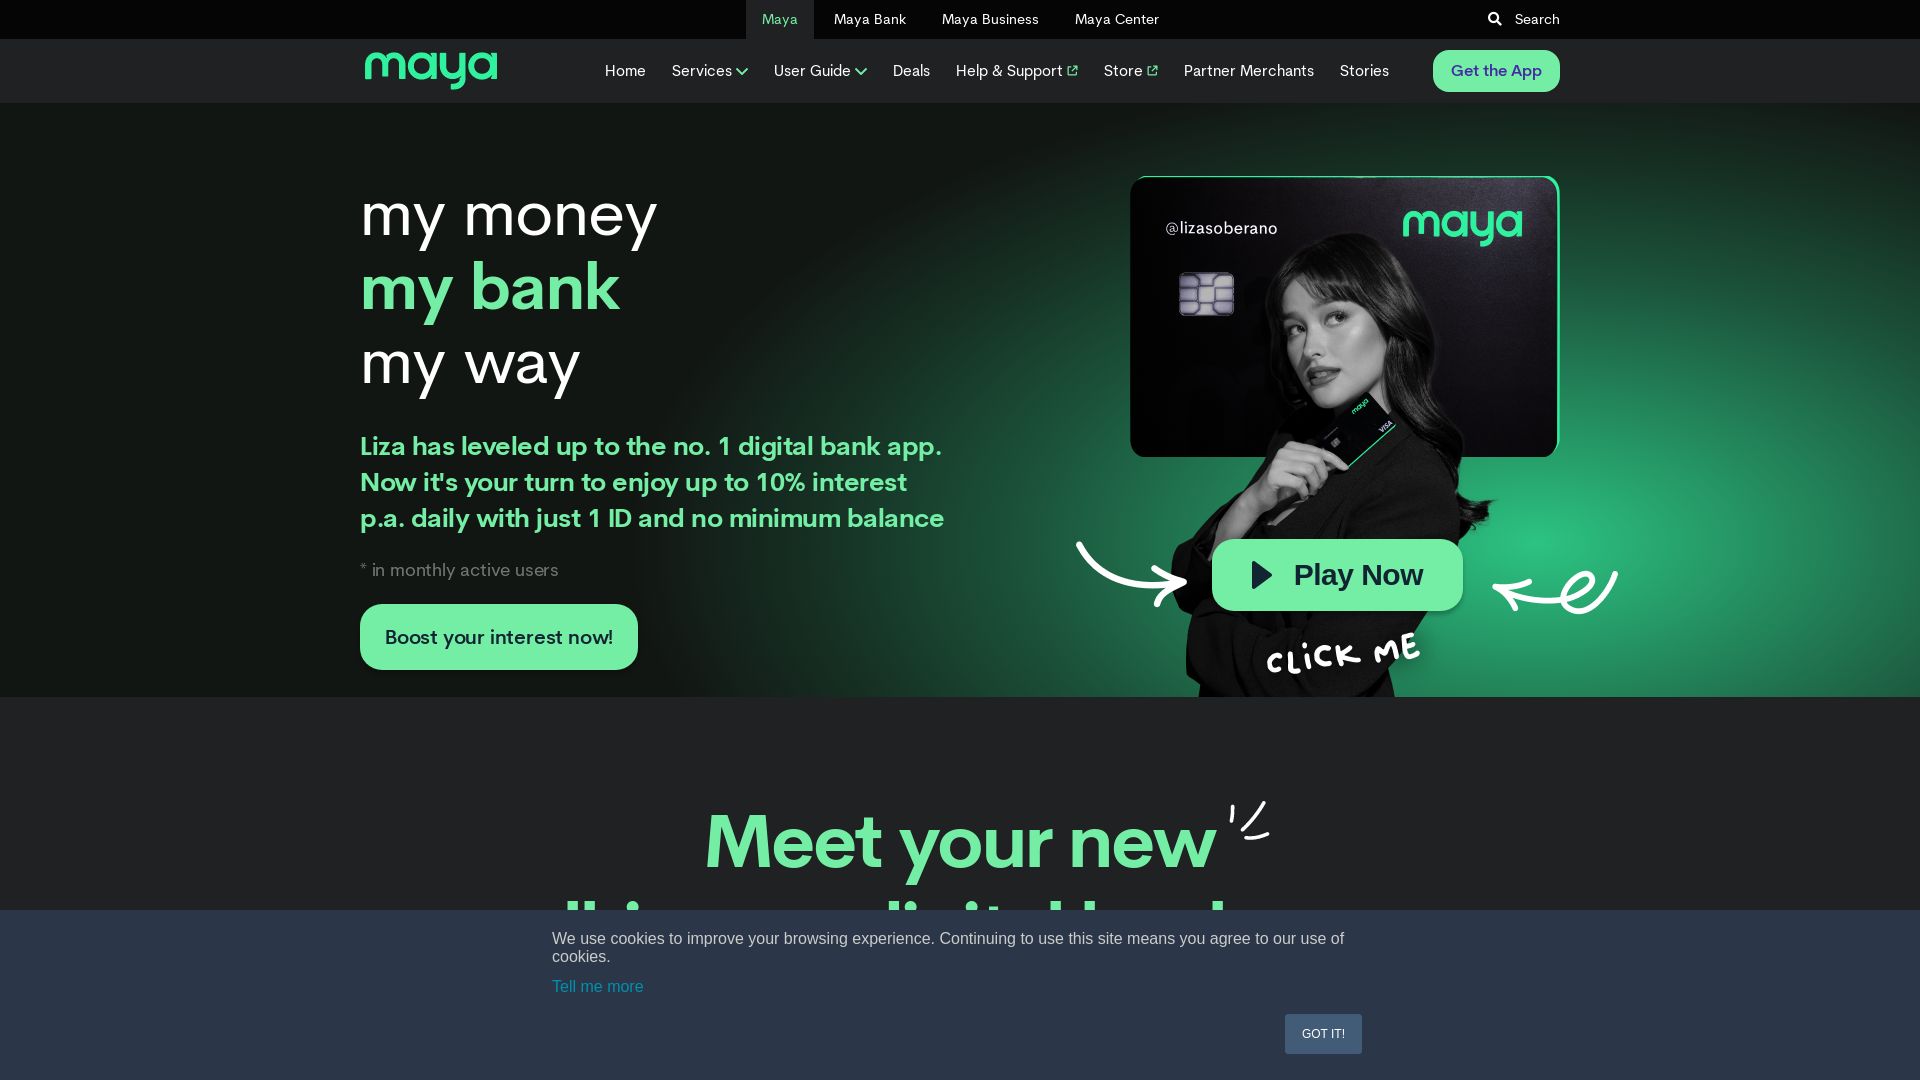 网站状态 paymaya.com 是  在线的